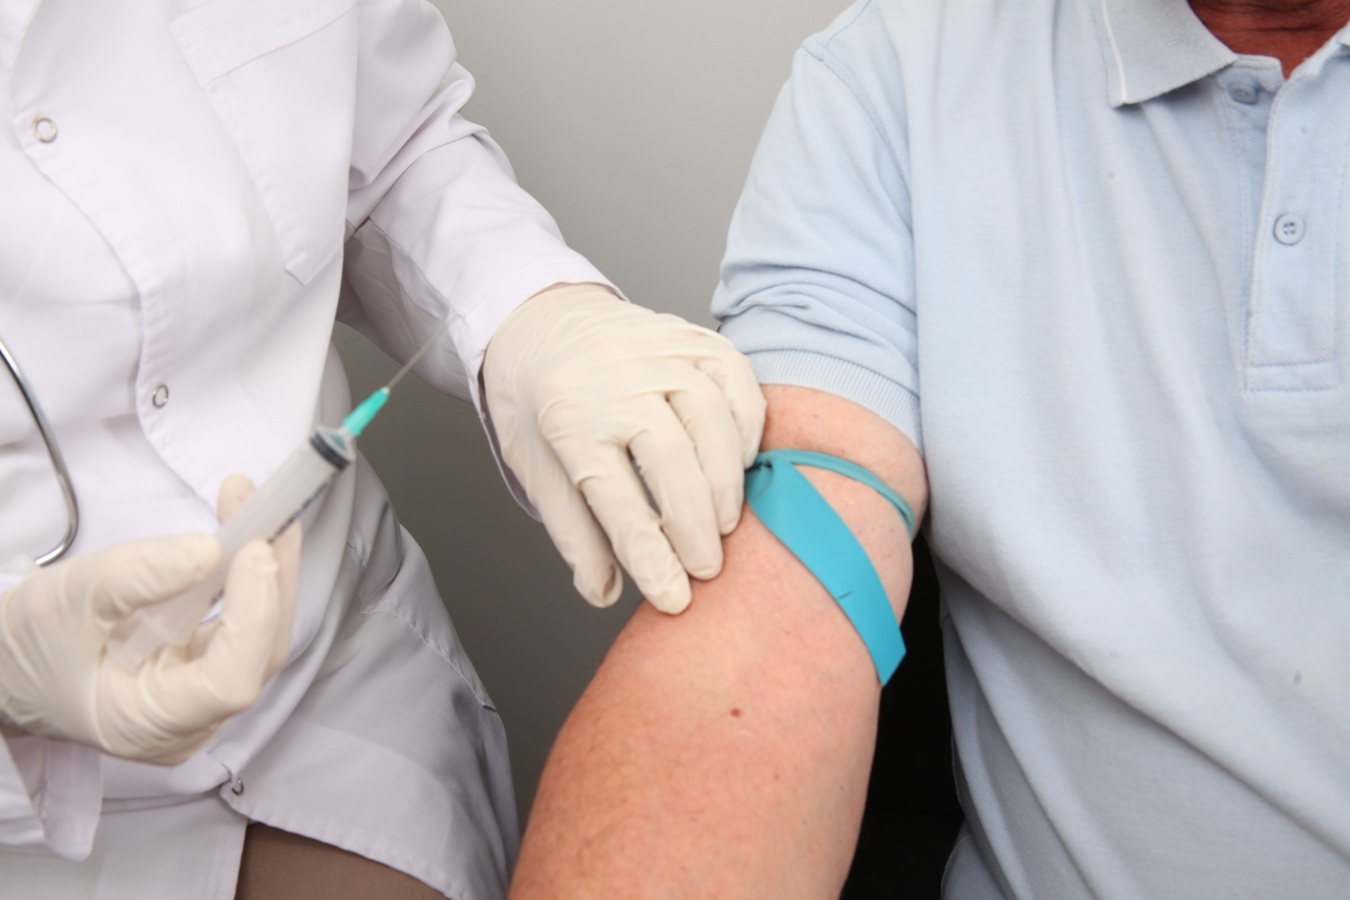 needle professional arm human body blood skin 647863 pxhere.com  - 12 Certos no Preparo e Administração dos Medicamentos